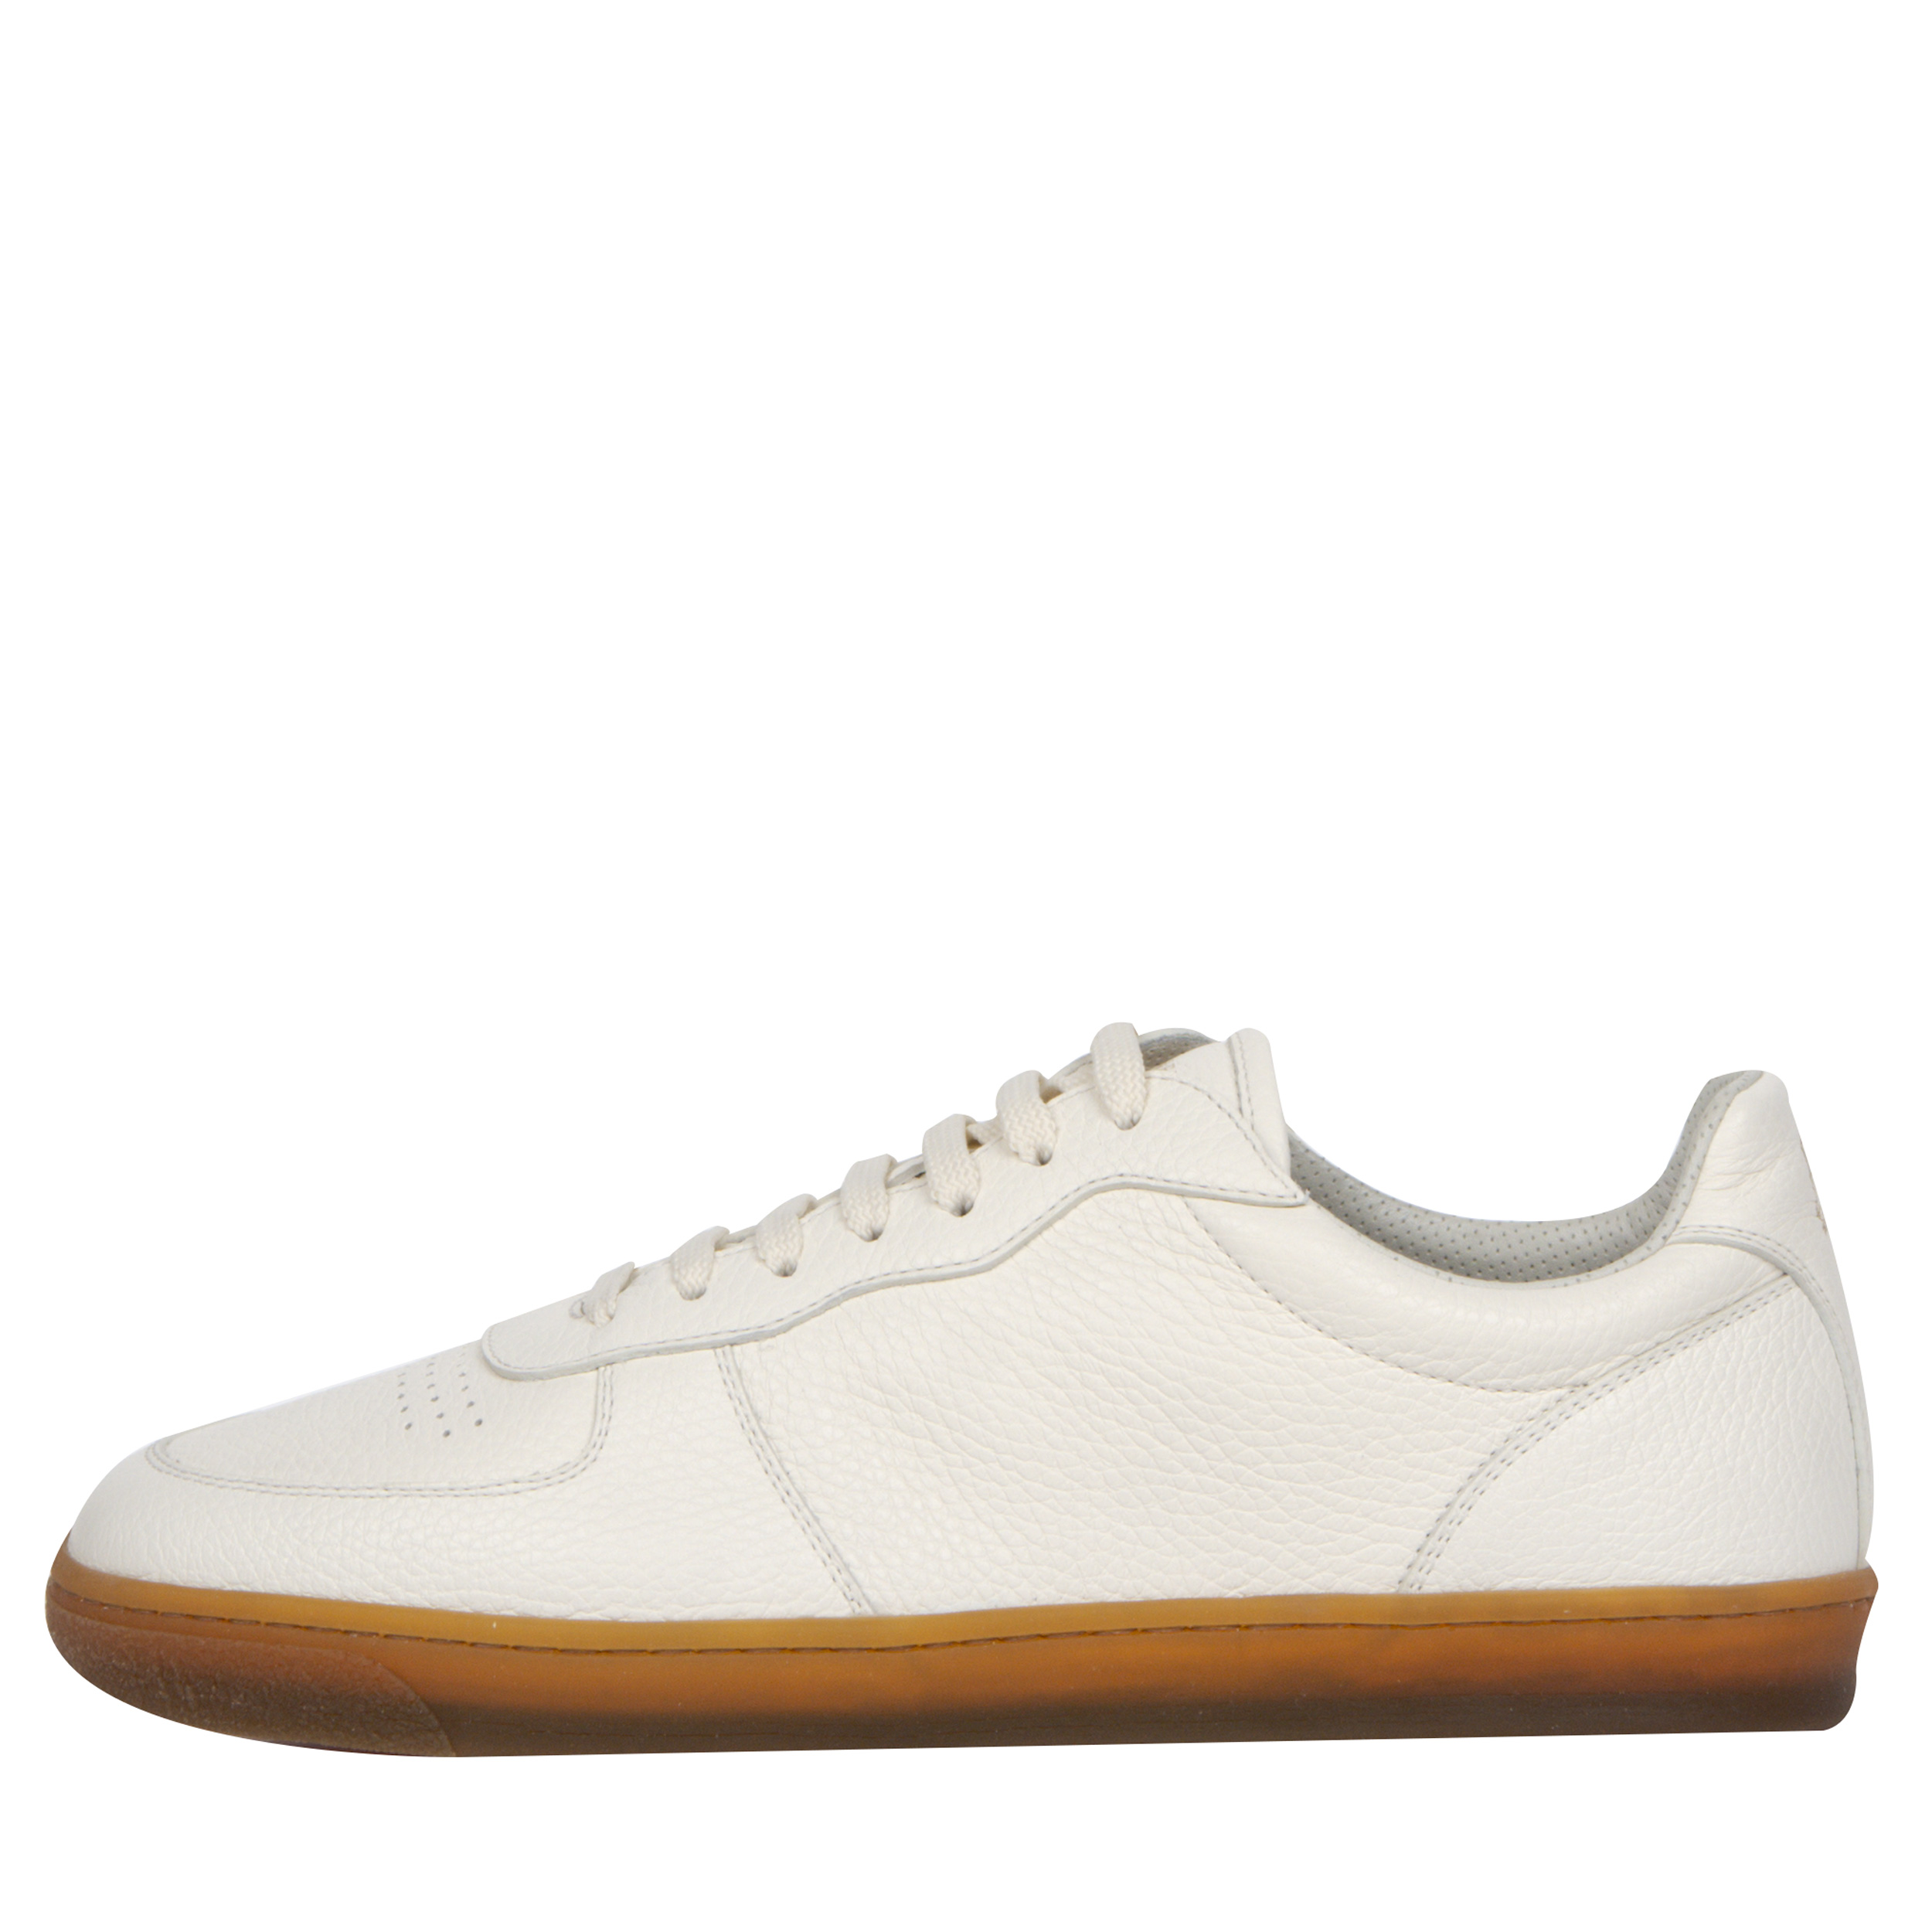 BRUNELLO CUCINELLI Grained Leather Gum Sole Sneakers White